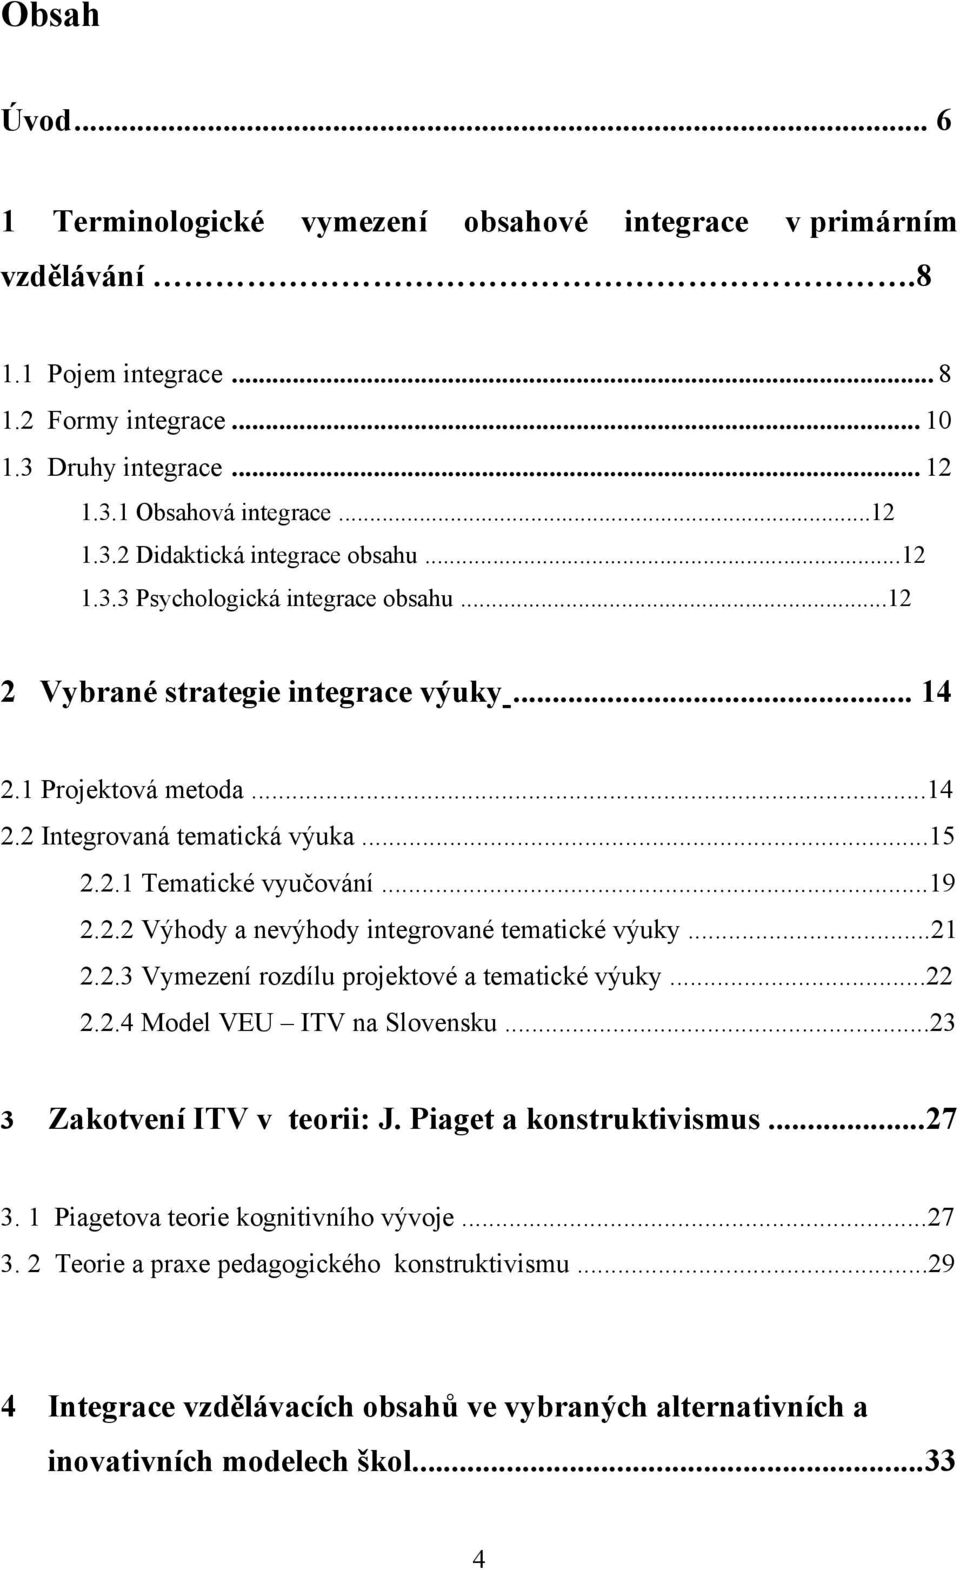 ..21 2.2.3 Vymezení rozdílu projektové a tematické výuky...22 2.2.4 Model VEU ITV na Slovensku...23 3 Zakotvení ITV v teorii: J. Piaget a konstruktivismus...27 3.